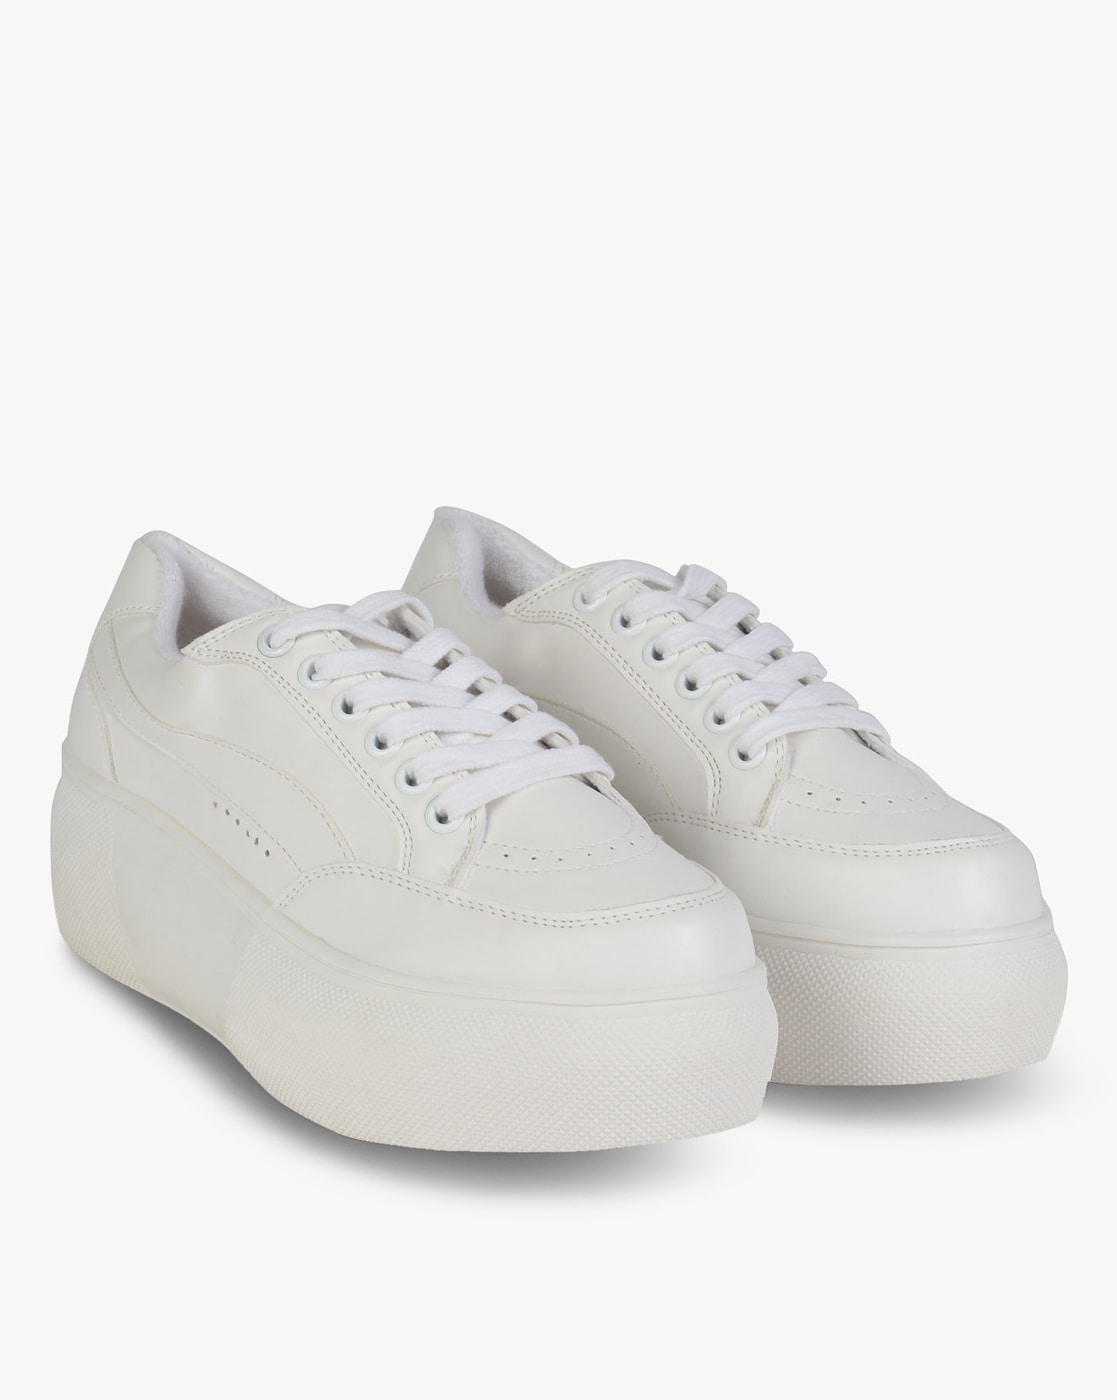 steve madden white sneakers platform